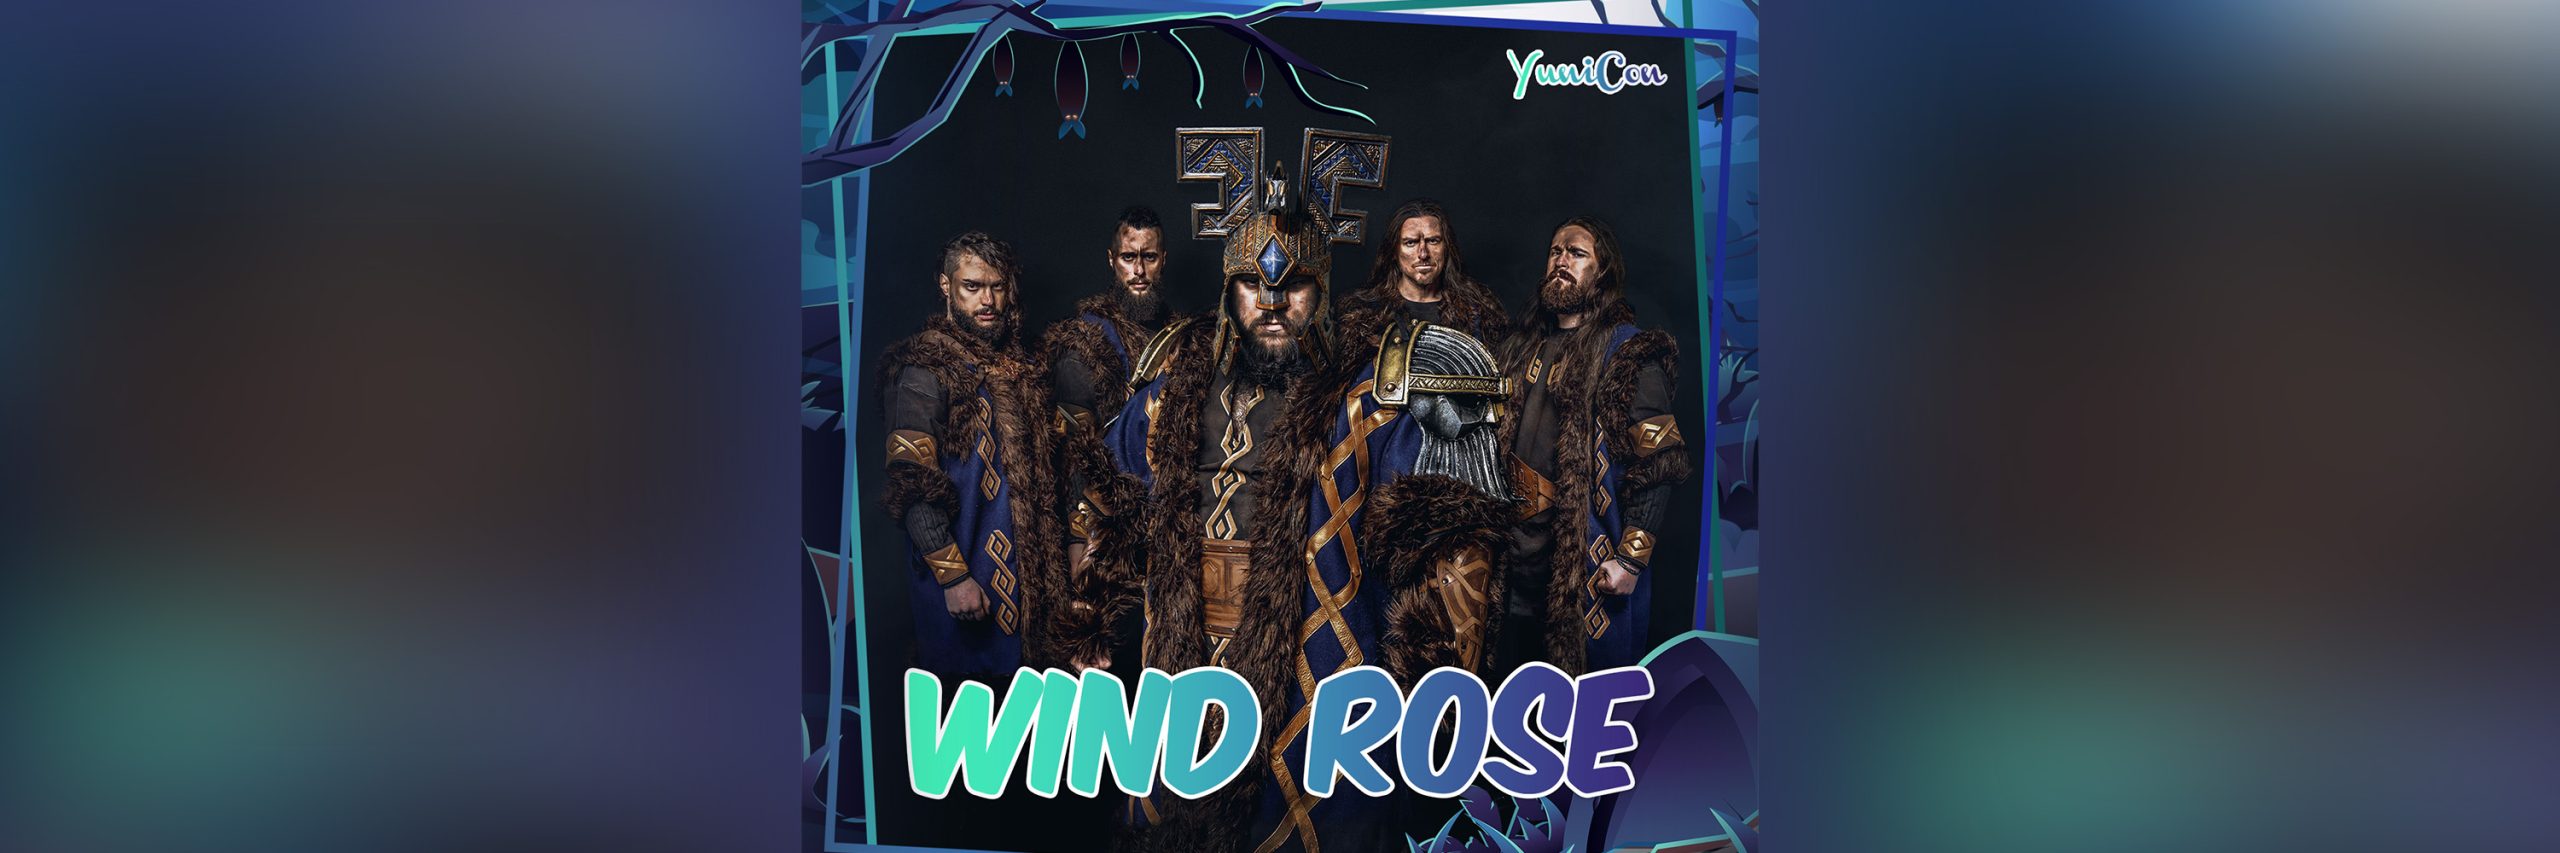 Wind Rose - Yunicon